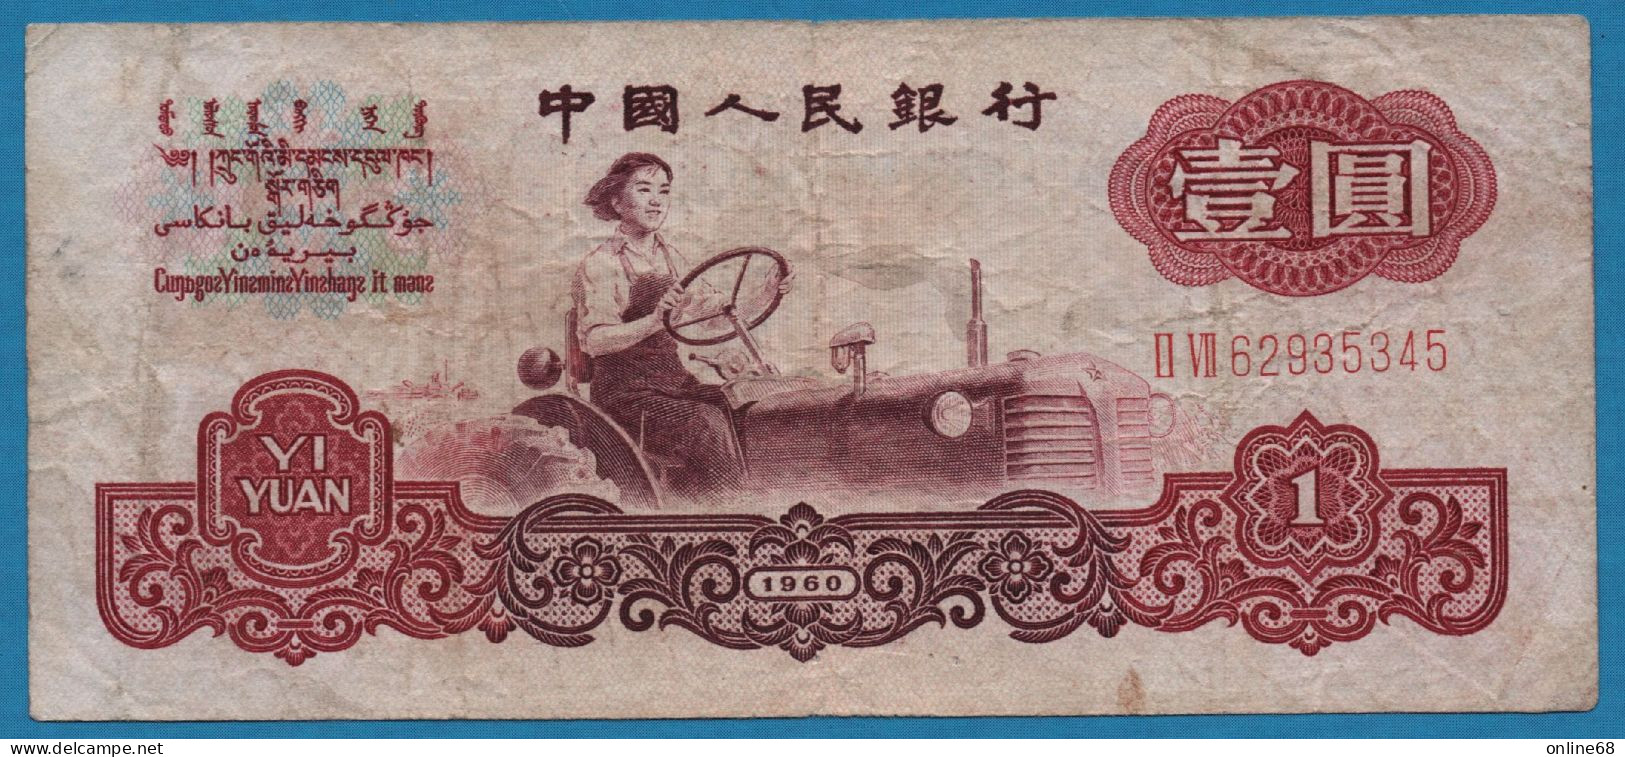 CHINA 1 YUAN 1960 # II VII 62835345 P# 874c Miss Liang Jun - China